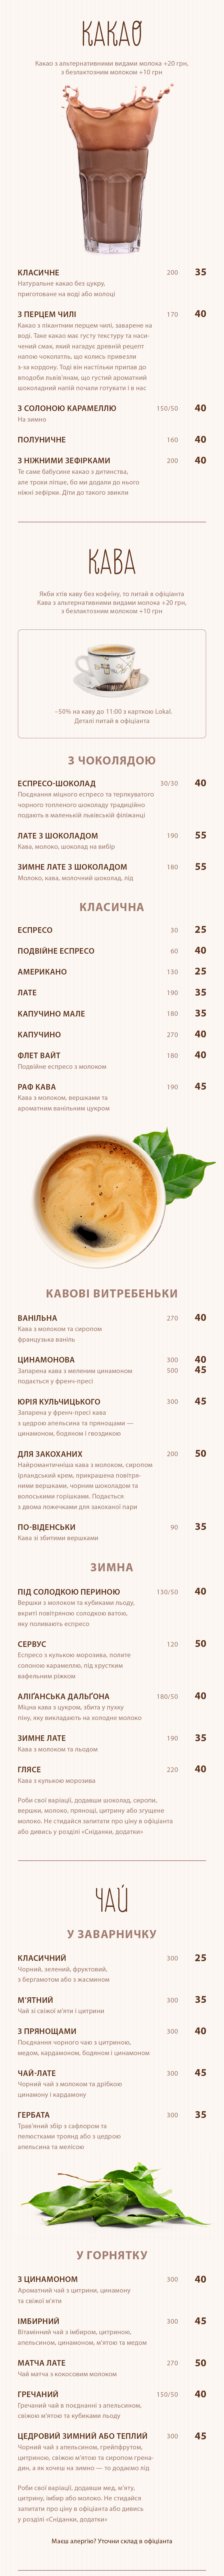 Львівська майстерня шоколаду. Меню: какао, кава, чай, напої